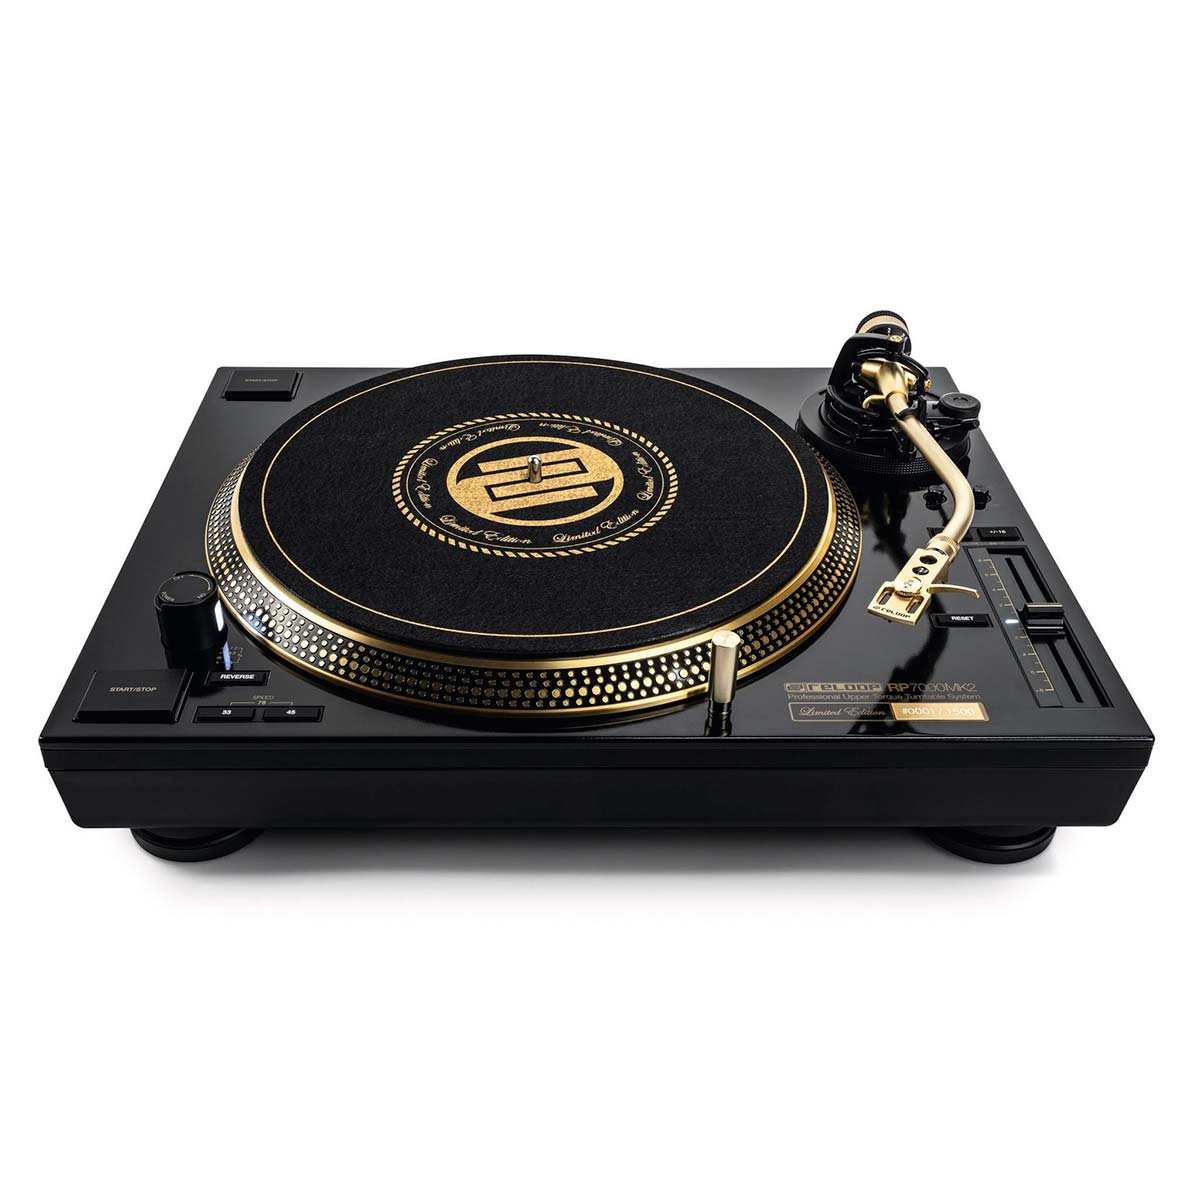 Giradiscos DJ Reloop RP-7000 Gold MK2 Edición Limitada